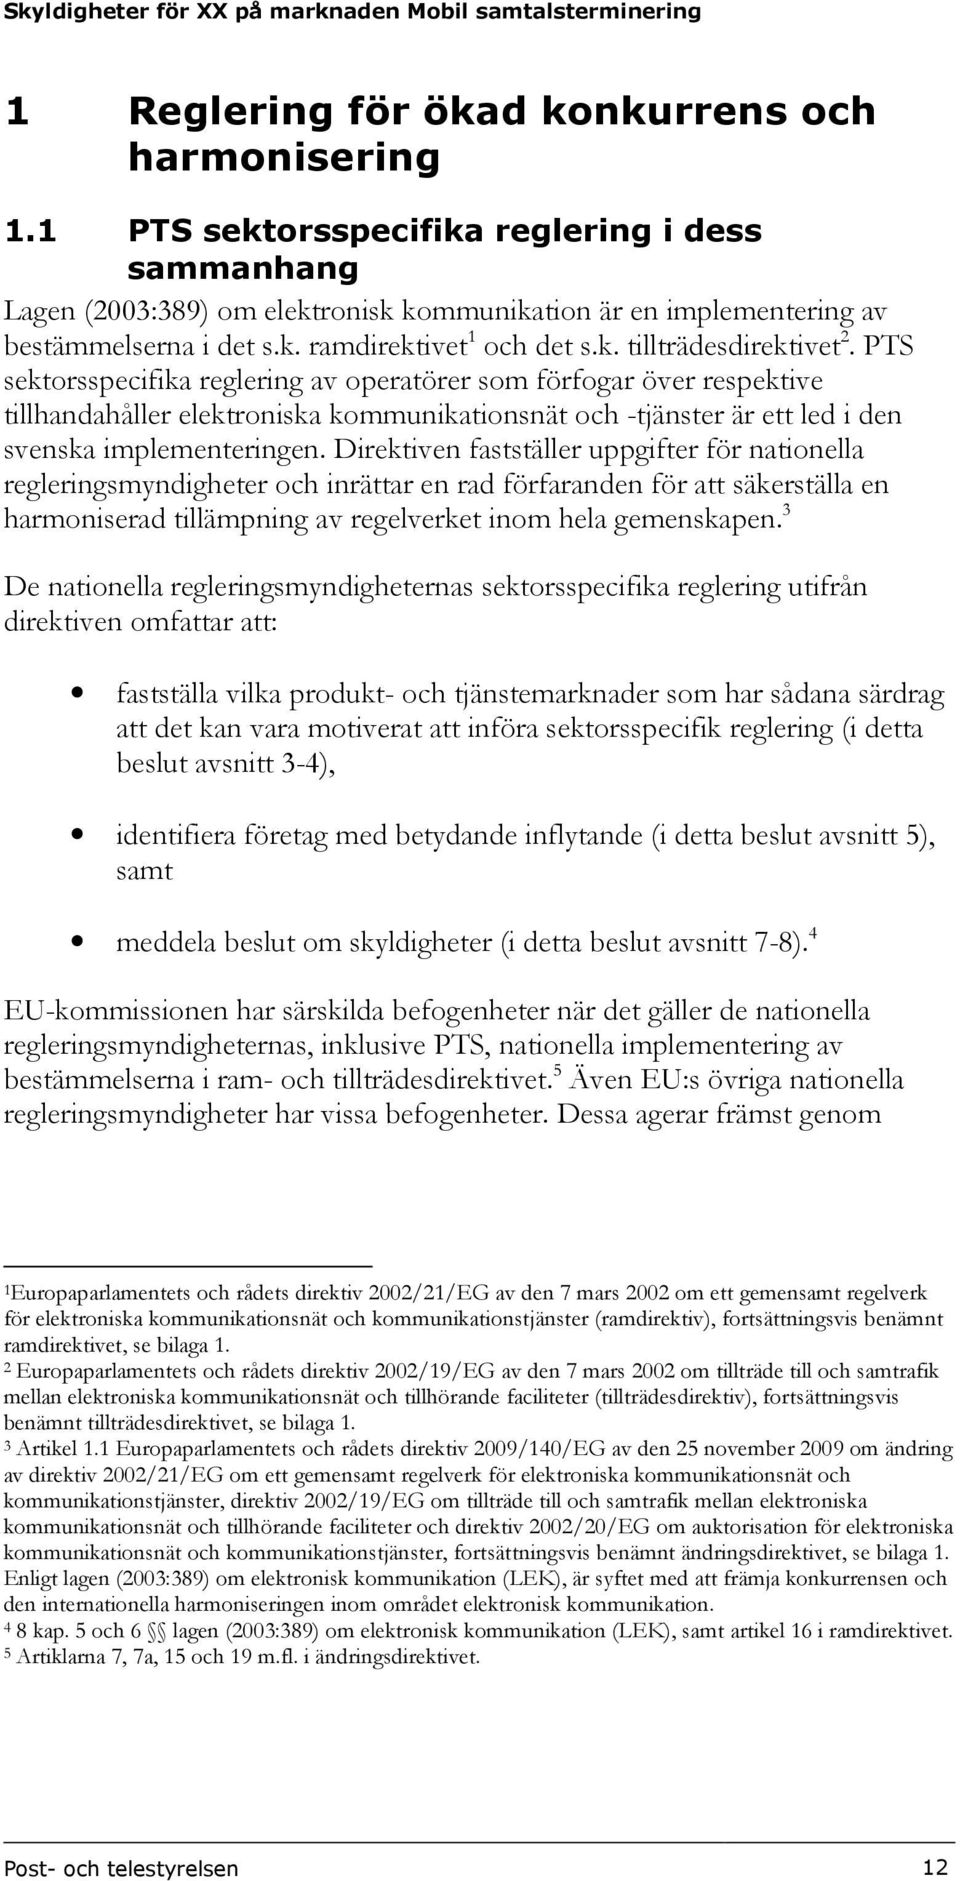 PTS sektorsspecifika reglering av operatörer som förfogar över respektive tillhandahåller elektroniska kommunikationsnät och -tjänster är ett led i den svenska implementeringen.